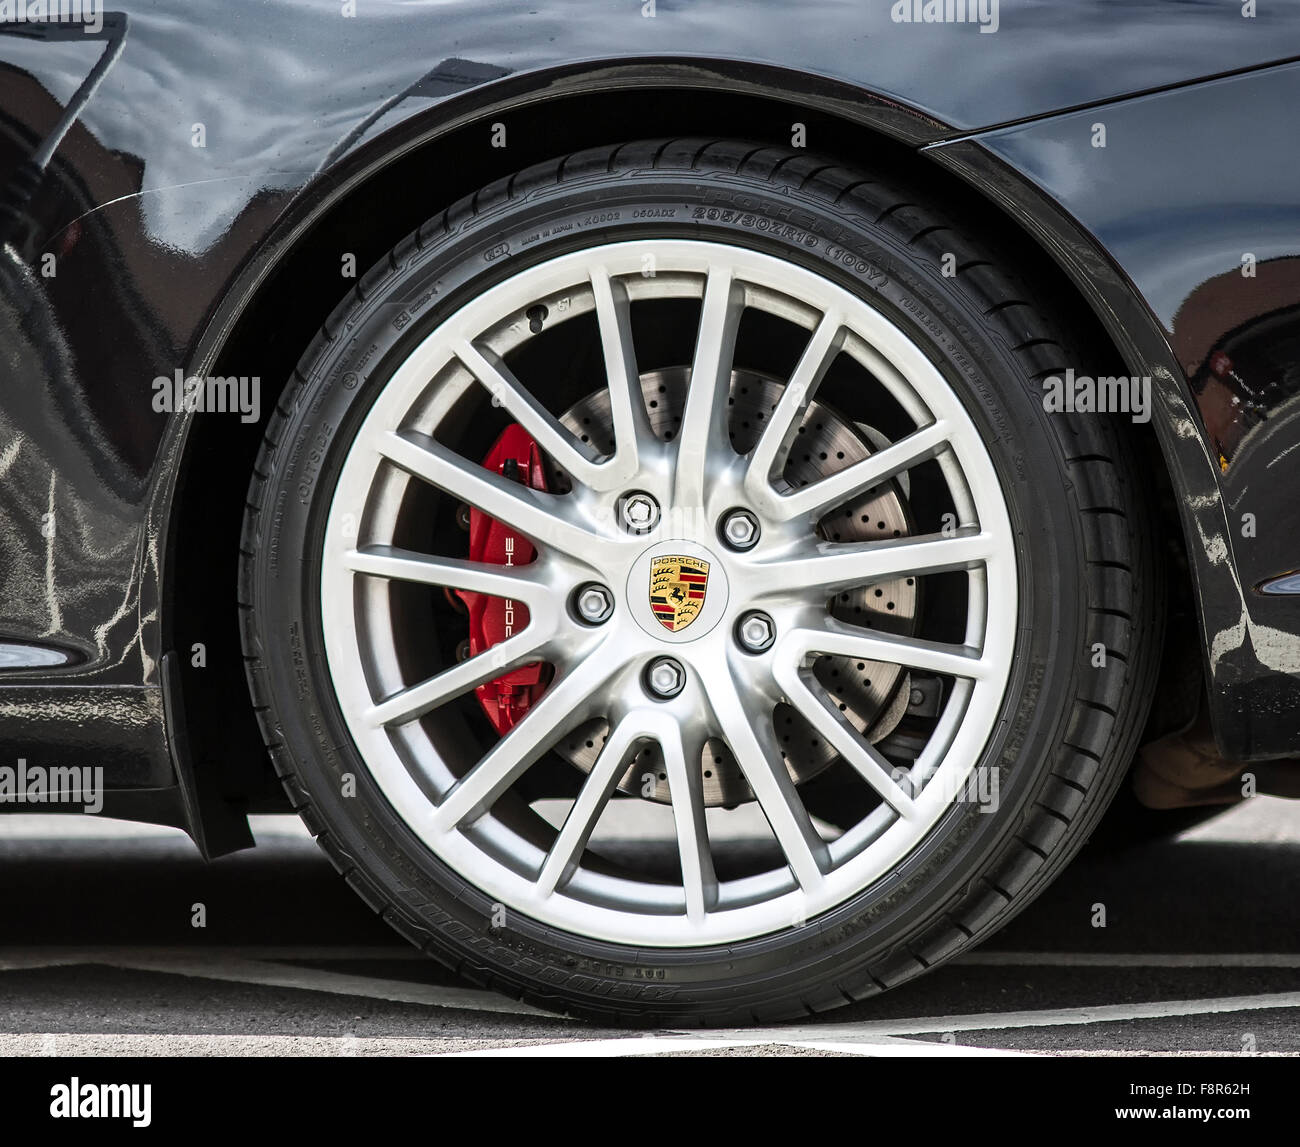 Porsche Rad und Reifen Stockfotografie - Alamy